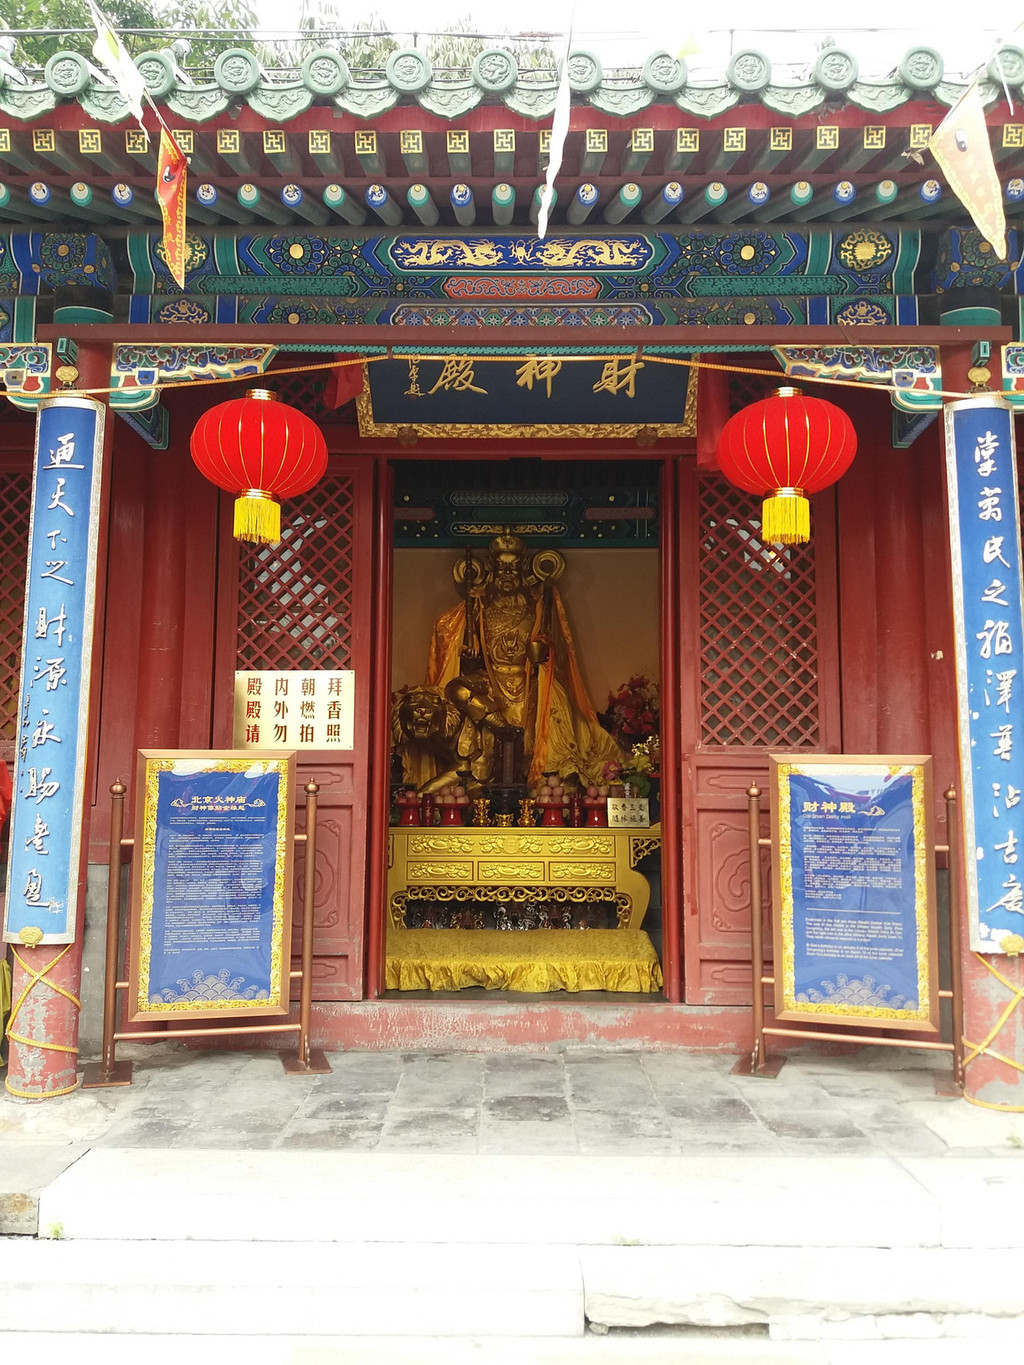 昔日道教寺庙,今日拜金吸金圣地—北京火德真君庙参观有感